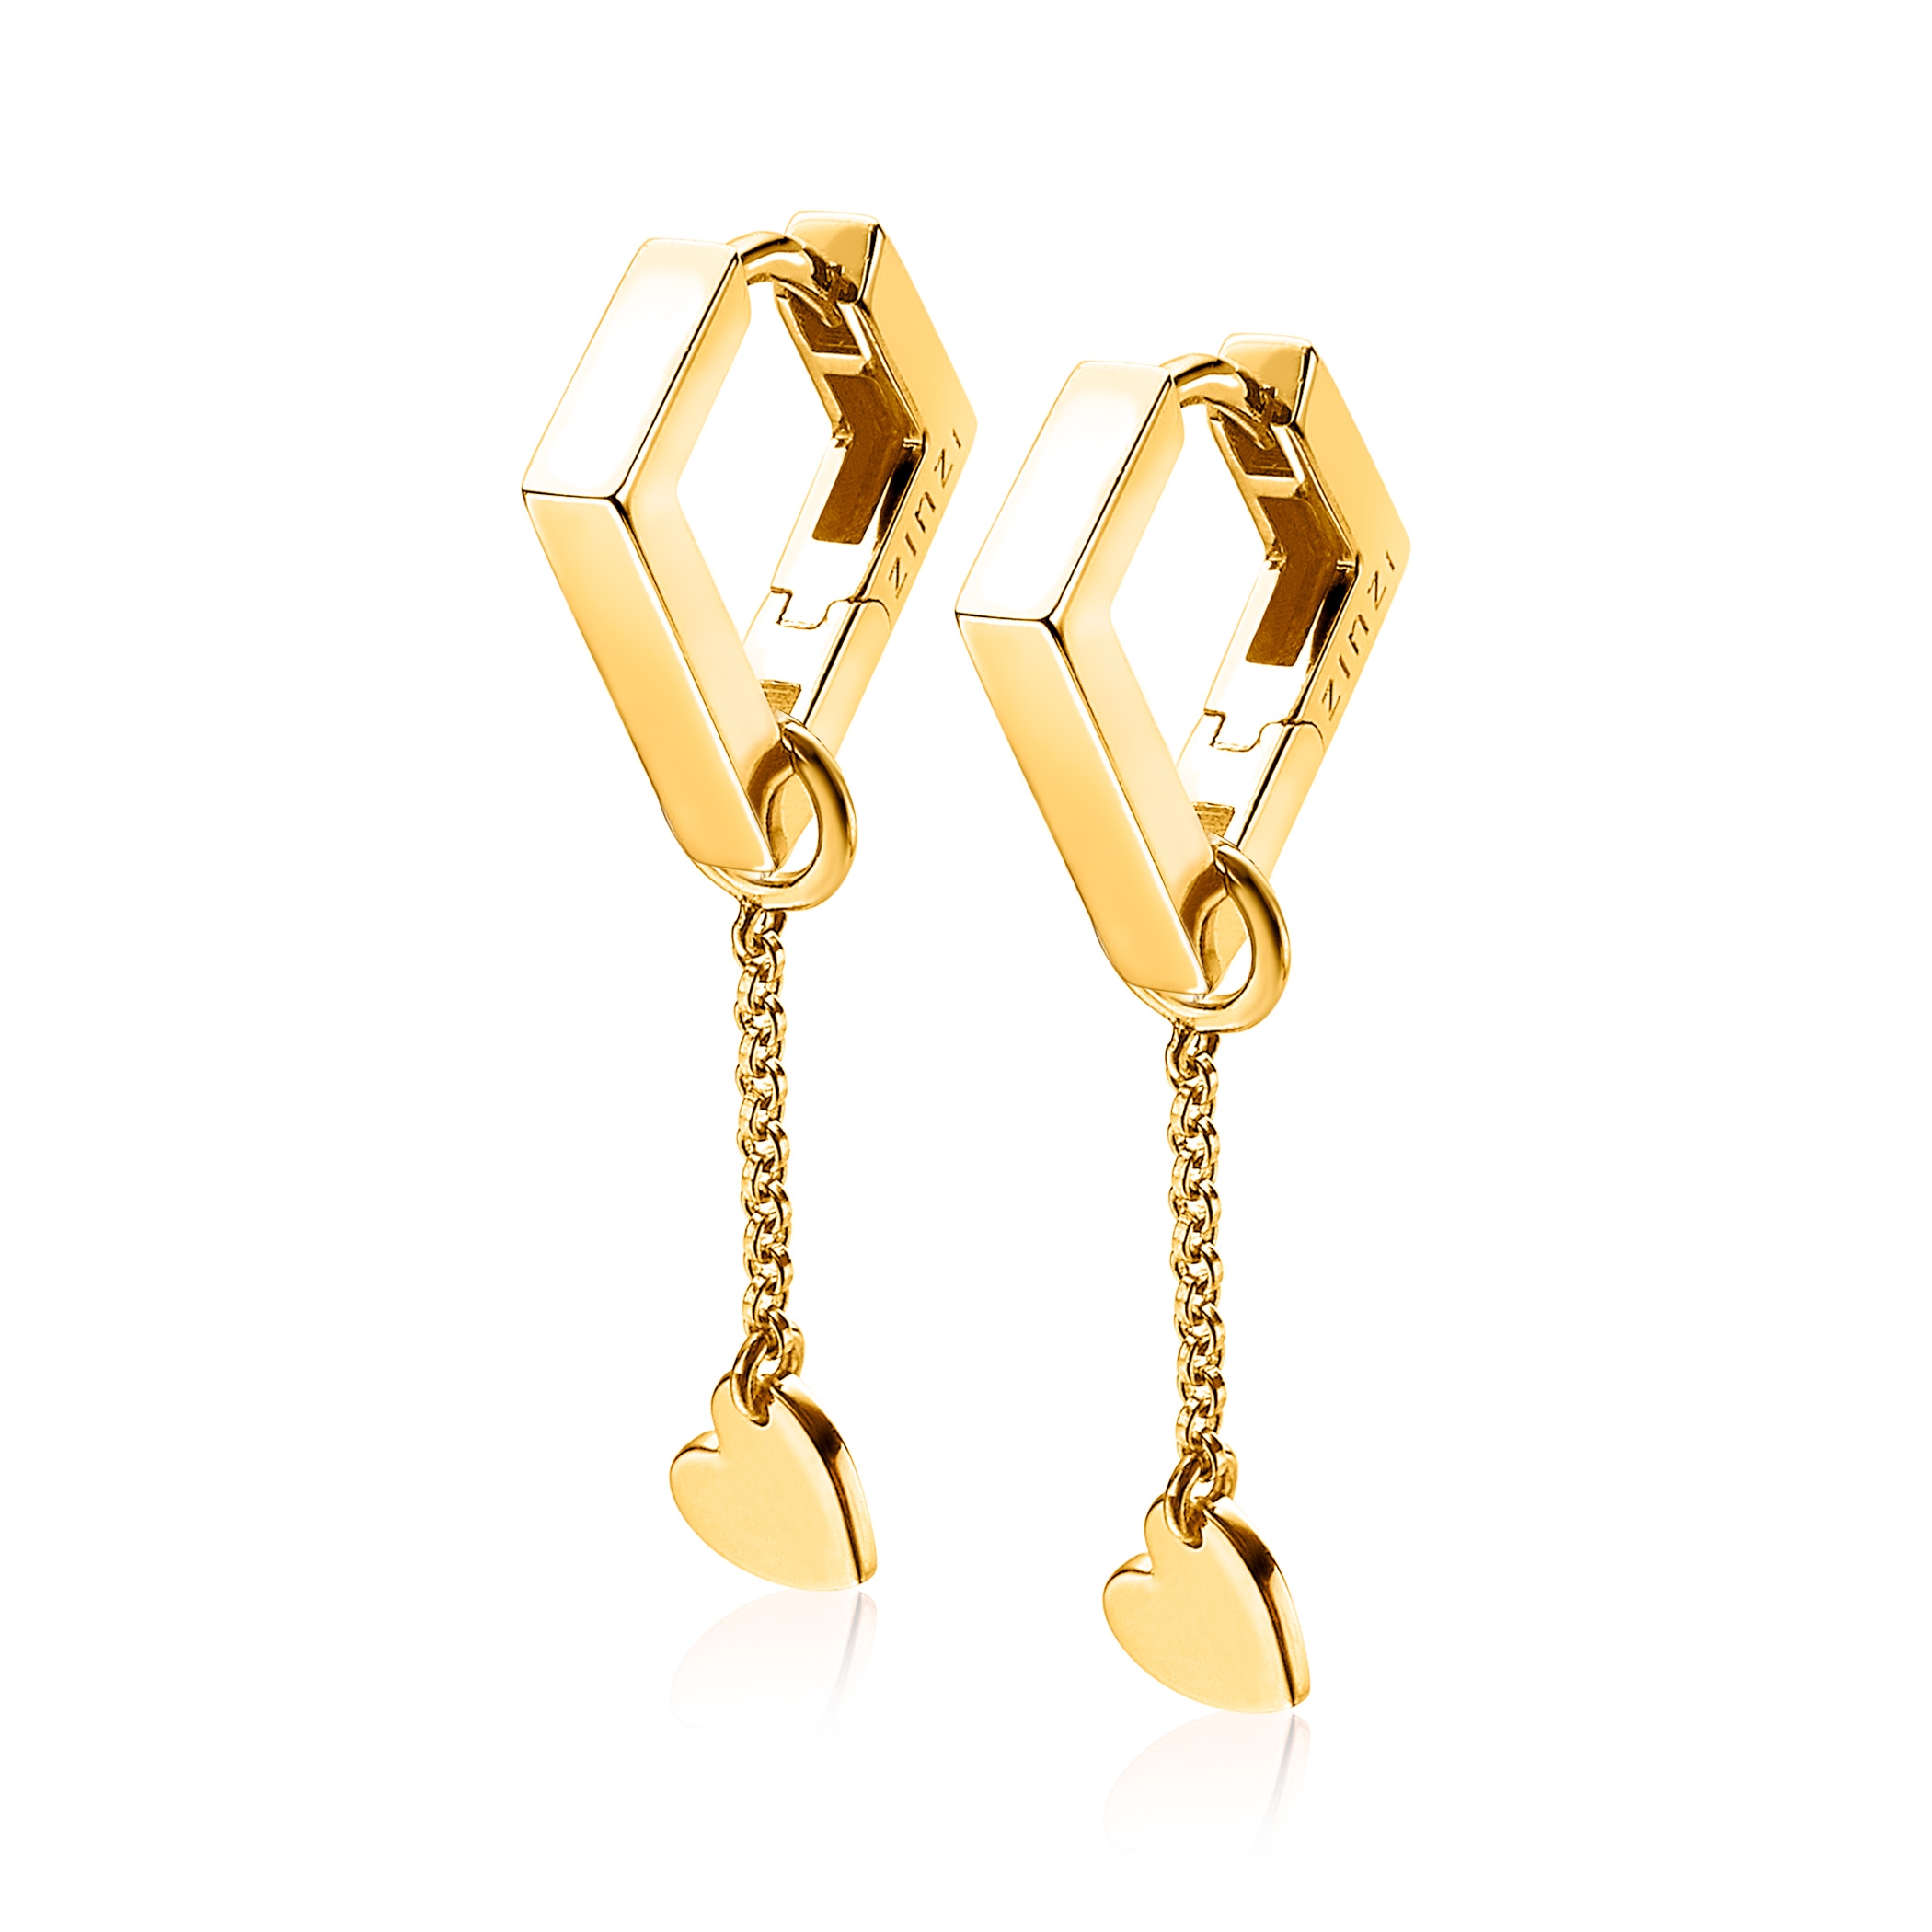 ZINZI Gold Plated Sterling Silver Earrings Pendants Heart ZICH1690G (excl. hoop earrings)